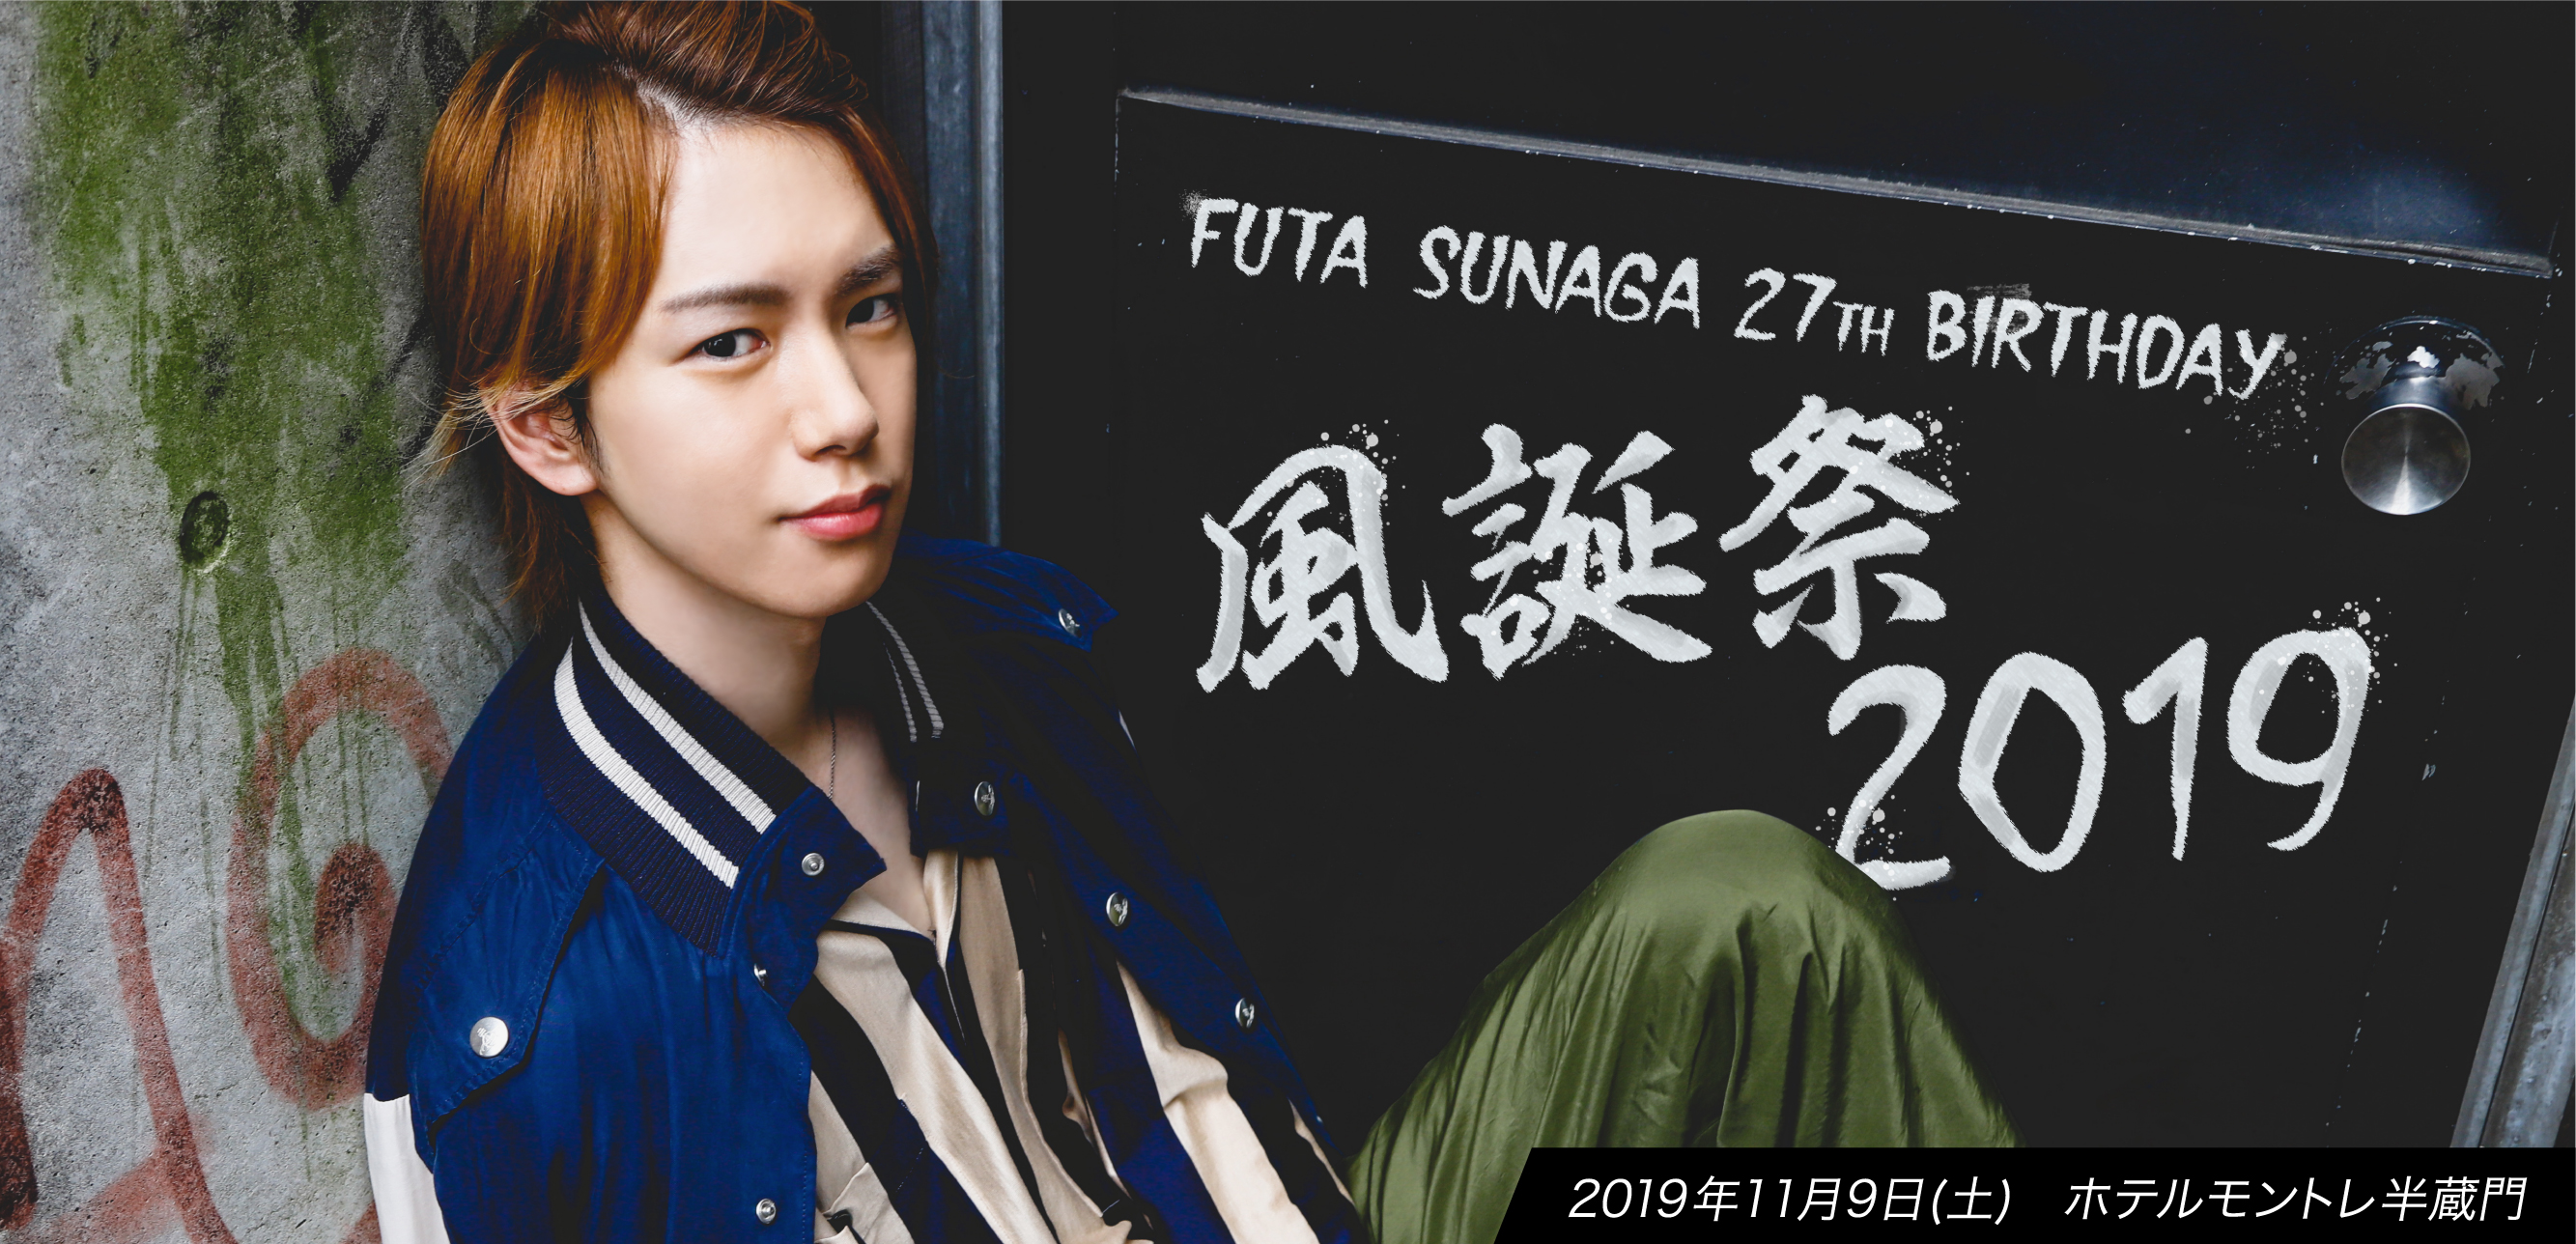 FUTA SUNAGA 27th BIRTHDAY 「⾵誕祭2019」